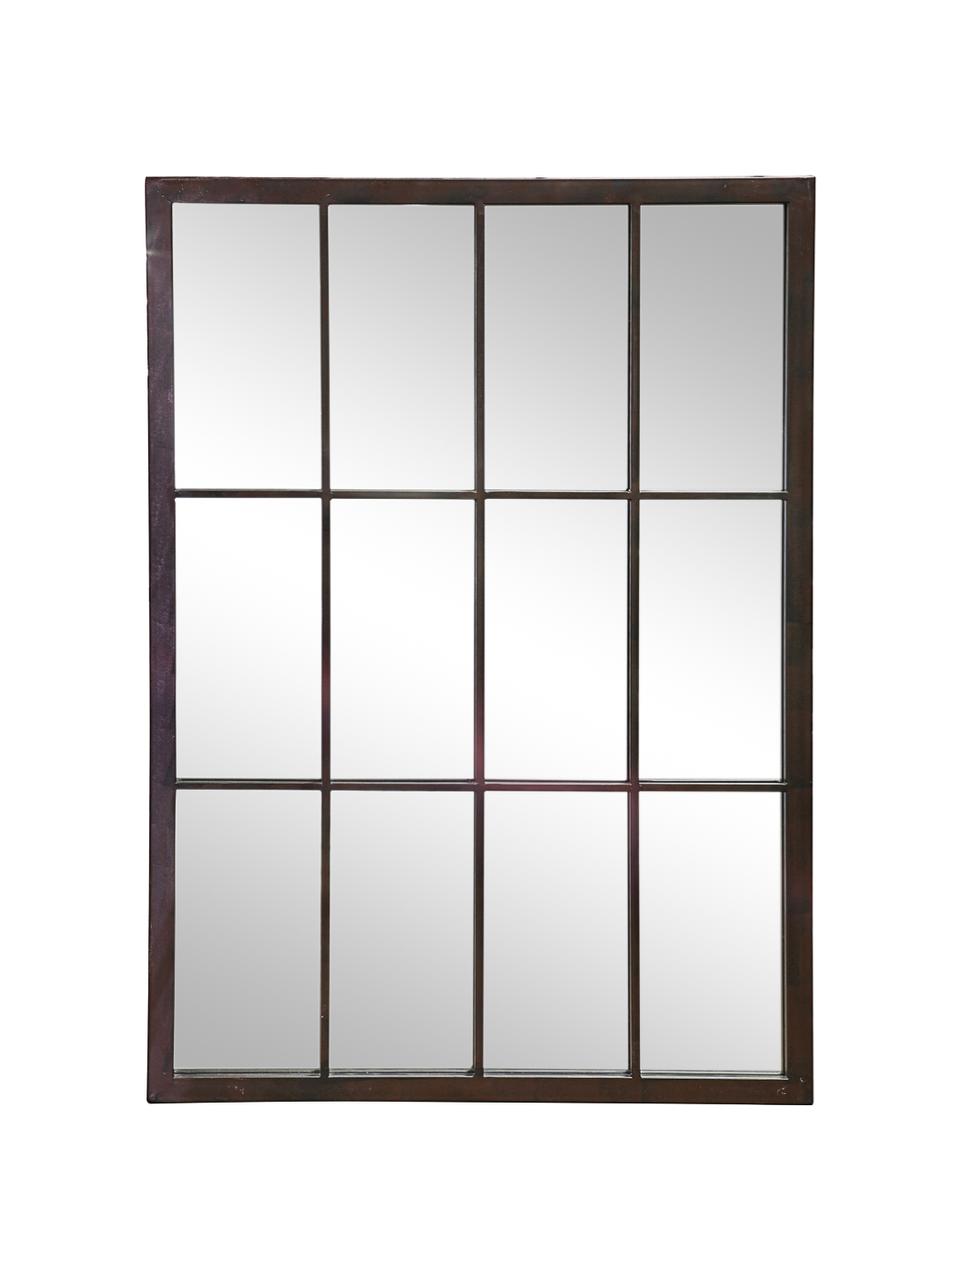 Eckiger Wandspiegel Zanetti mit schwarzem Metallrahmen, Rahmen: Metall, lackiert, Spiegelfläche: Spiegelglas, Schwarz, B 50 x H 70 cm